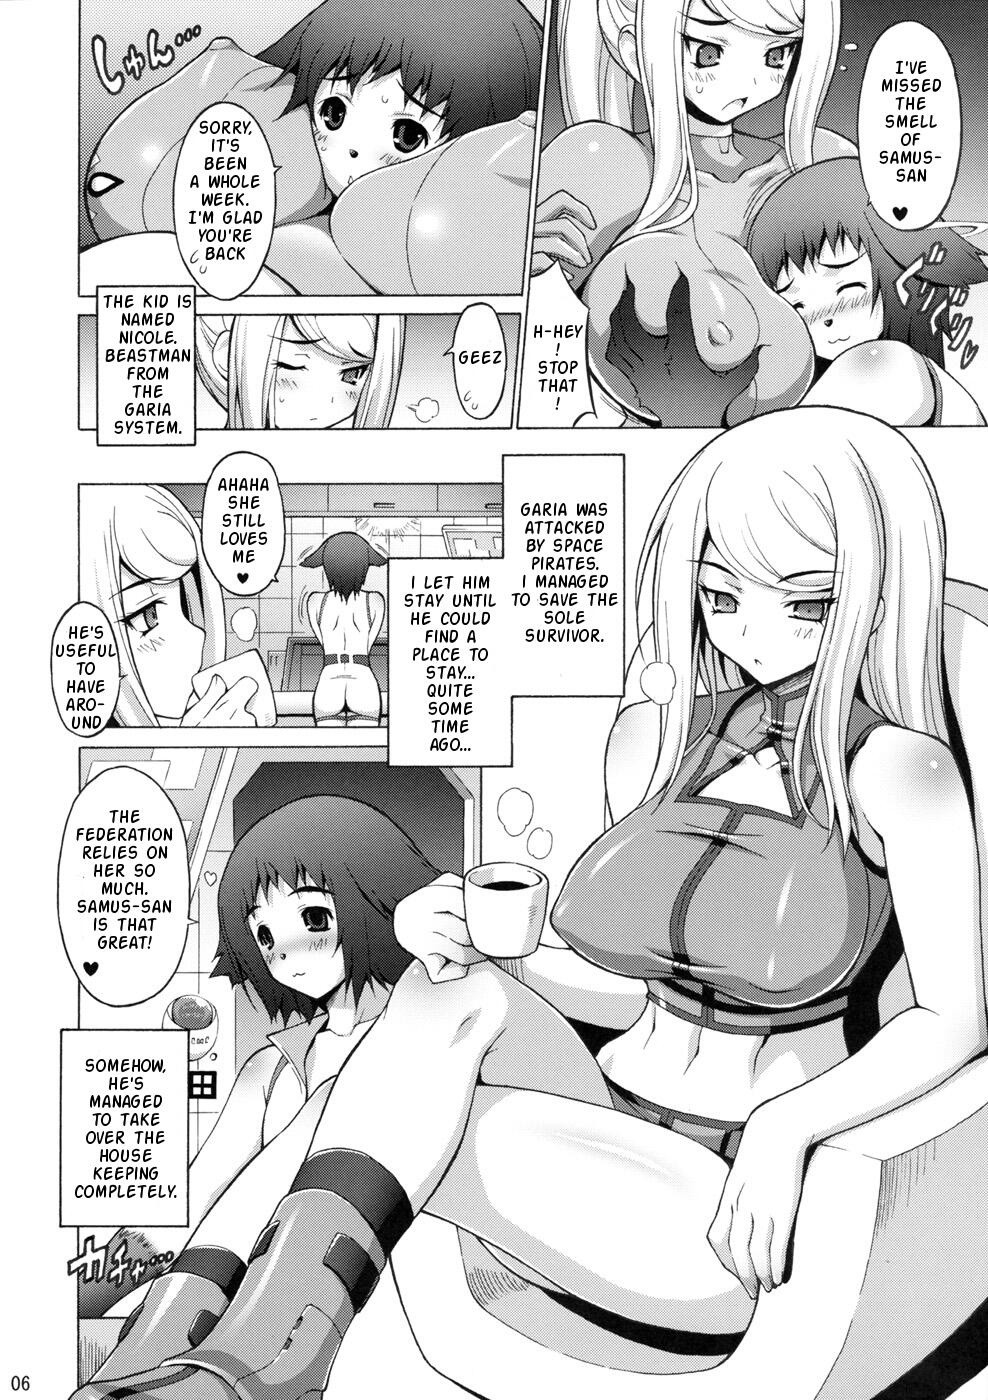 Erosuit Samus X hentai manga picture 6